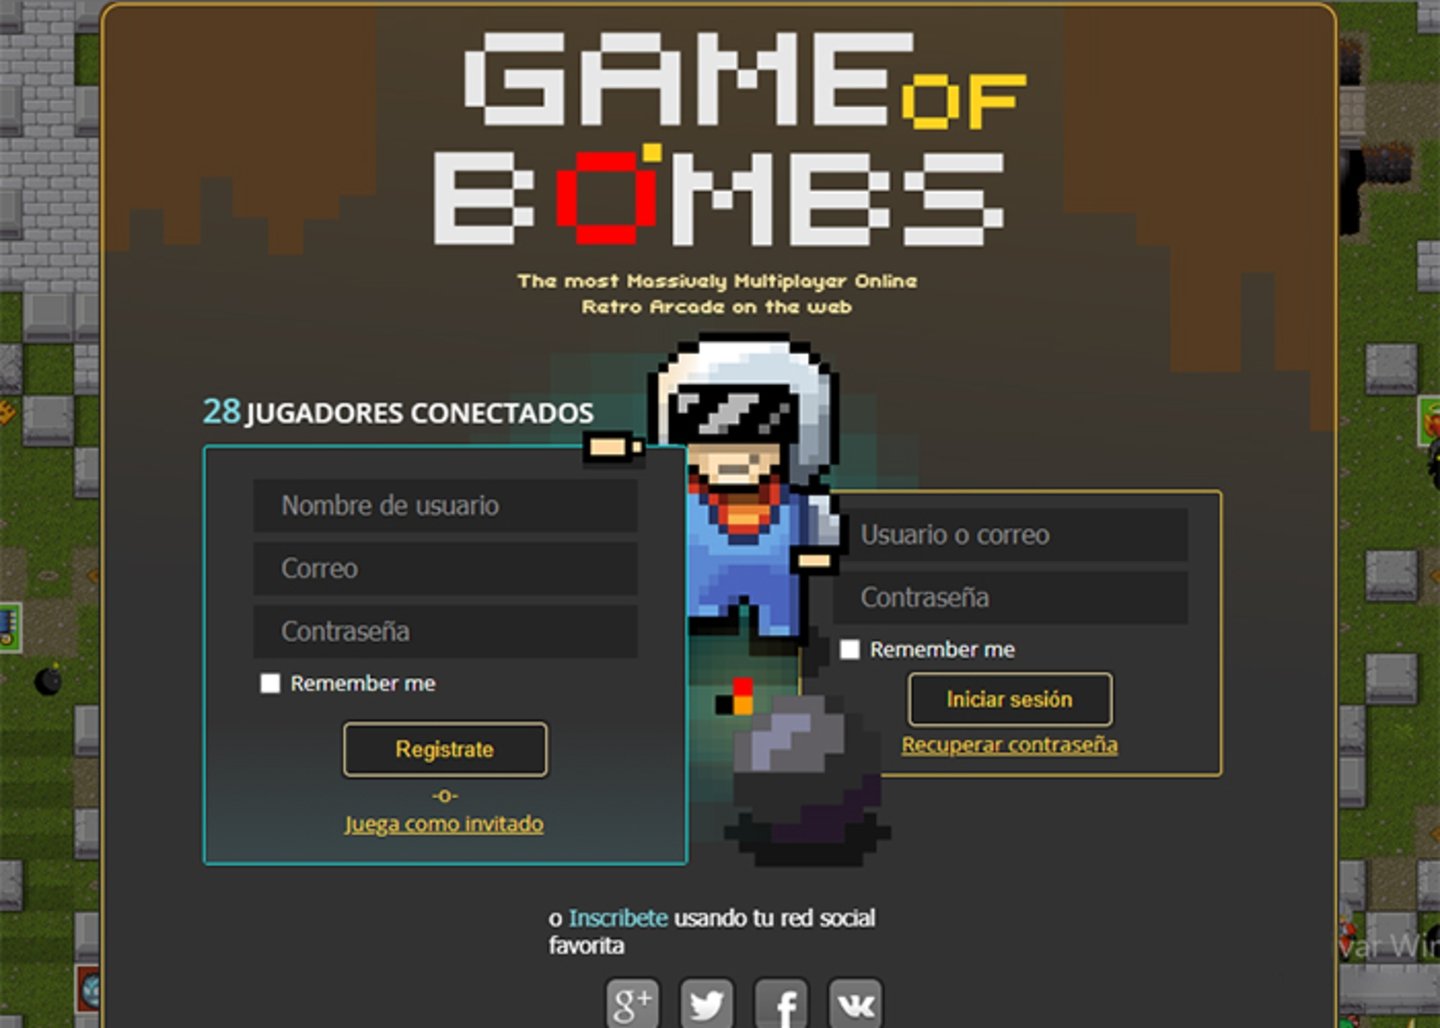 Caos explosivo - desata el poder del juego de bombas